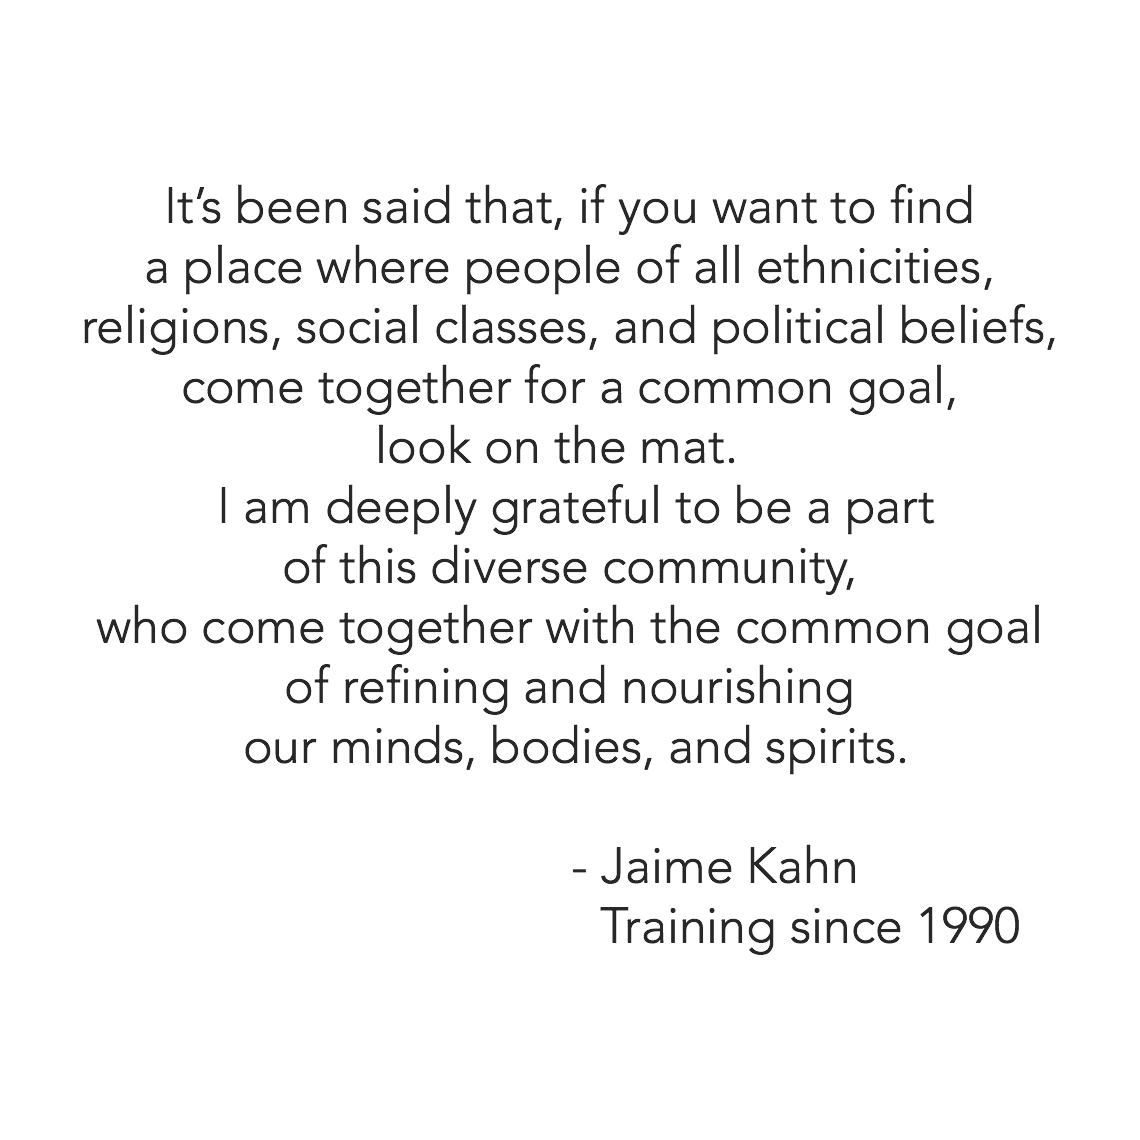 Jaime Kahn 1990